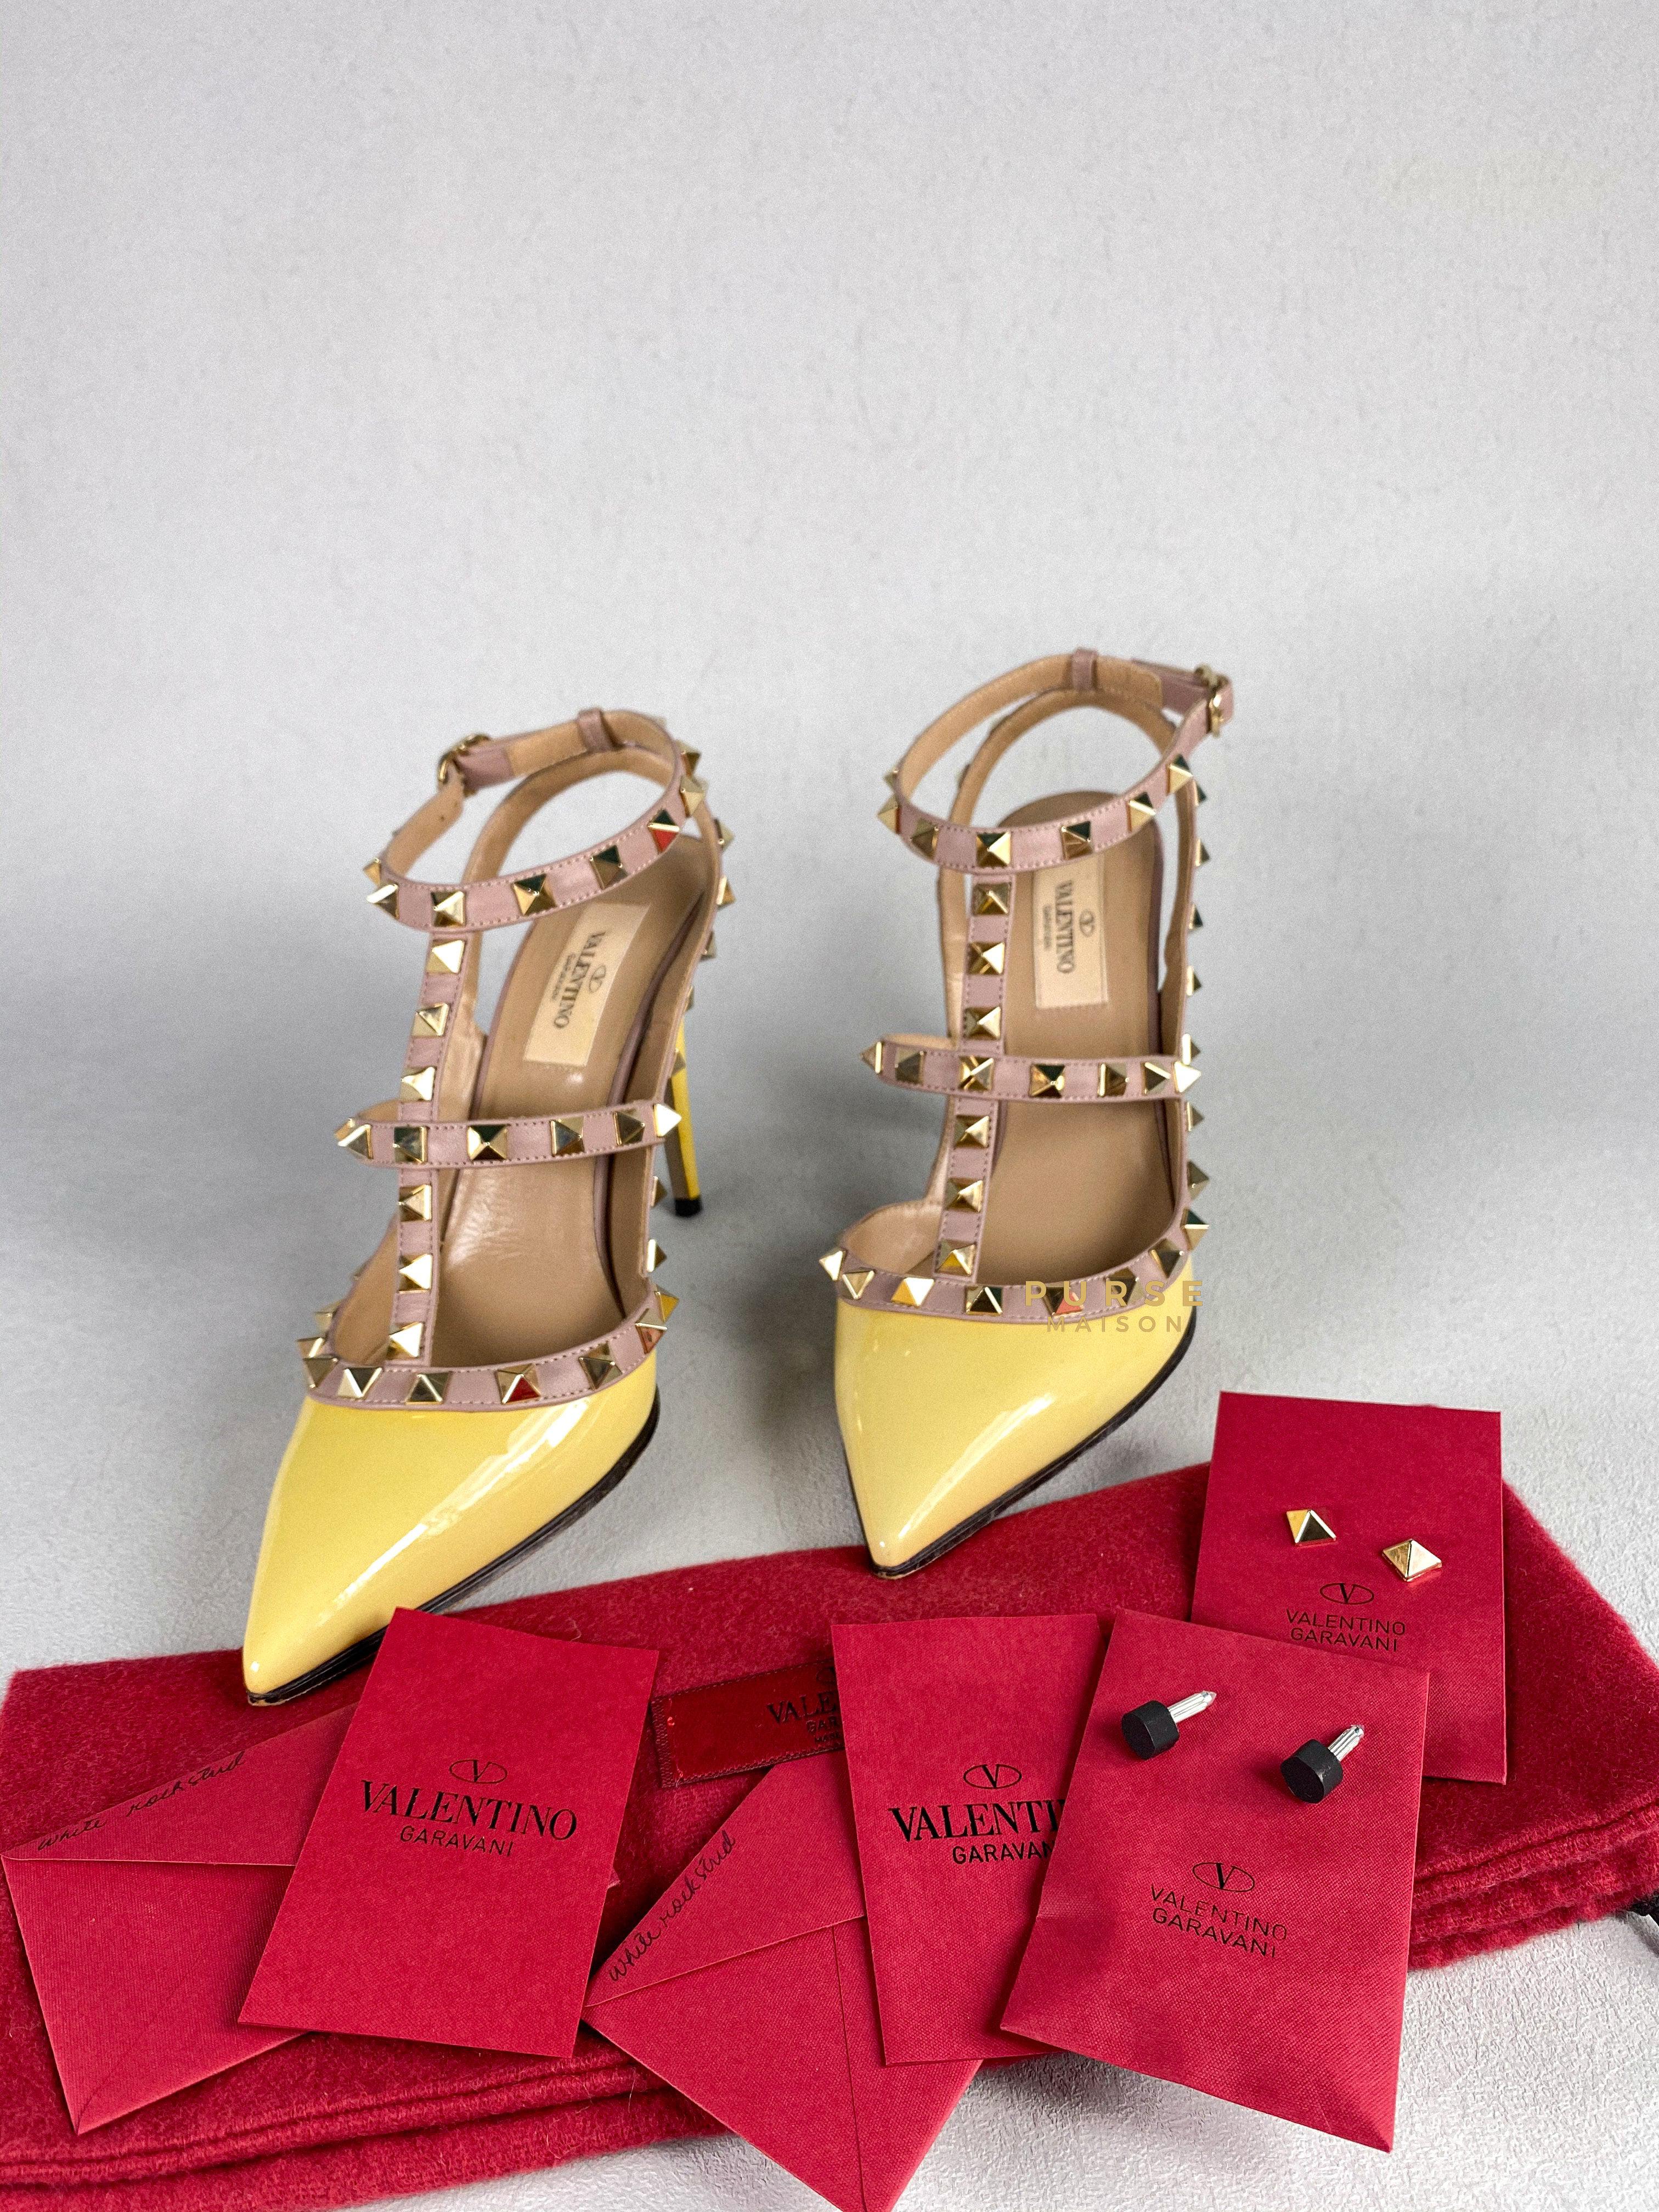 Valentino Garavani Rockstud High heels Ankle Strap Multicolor (size 37.5 EUR) | Purse Maison Luxury Bags Shop